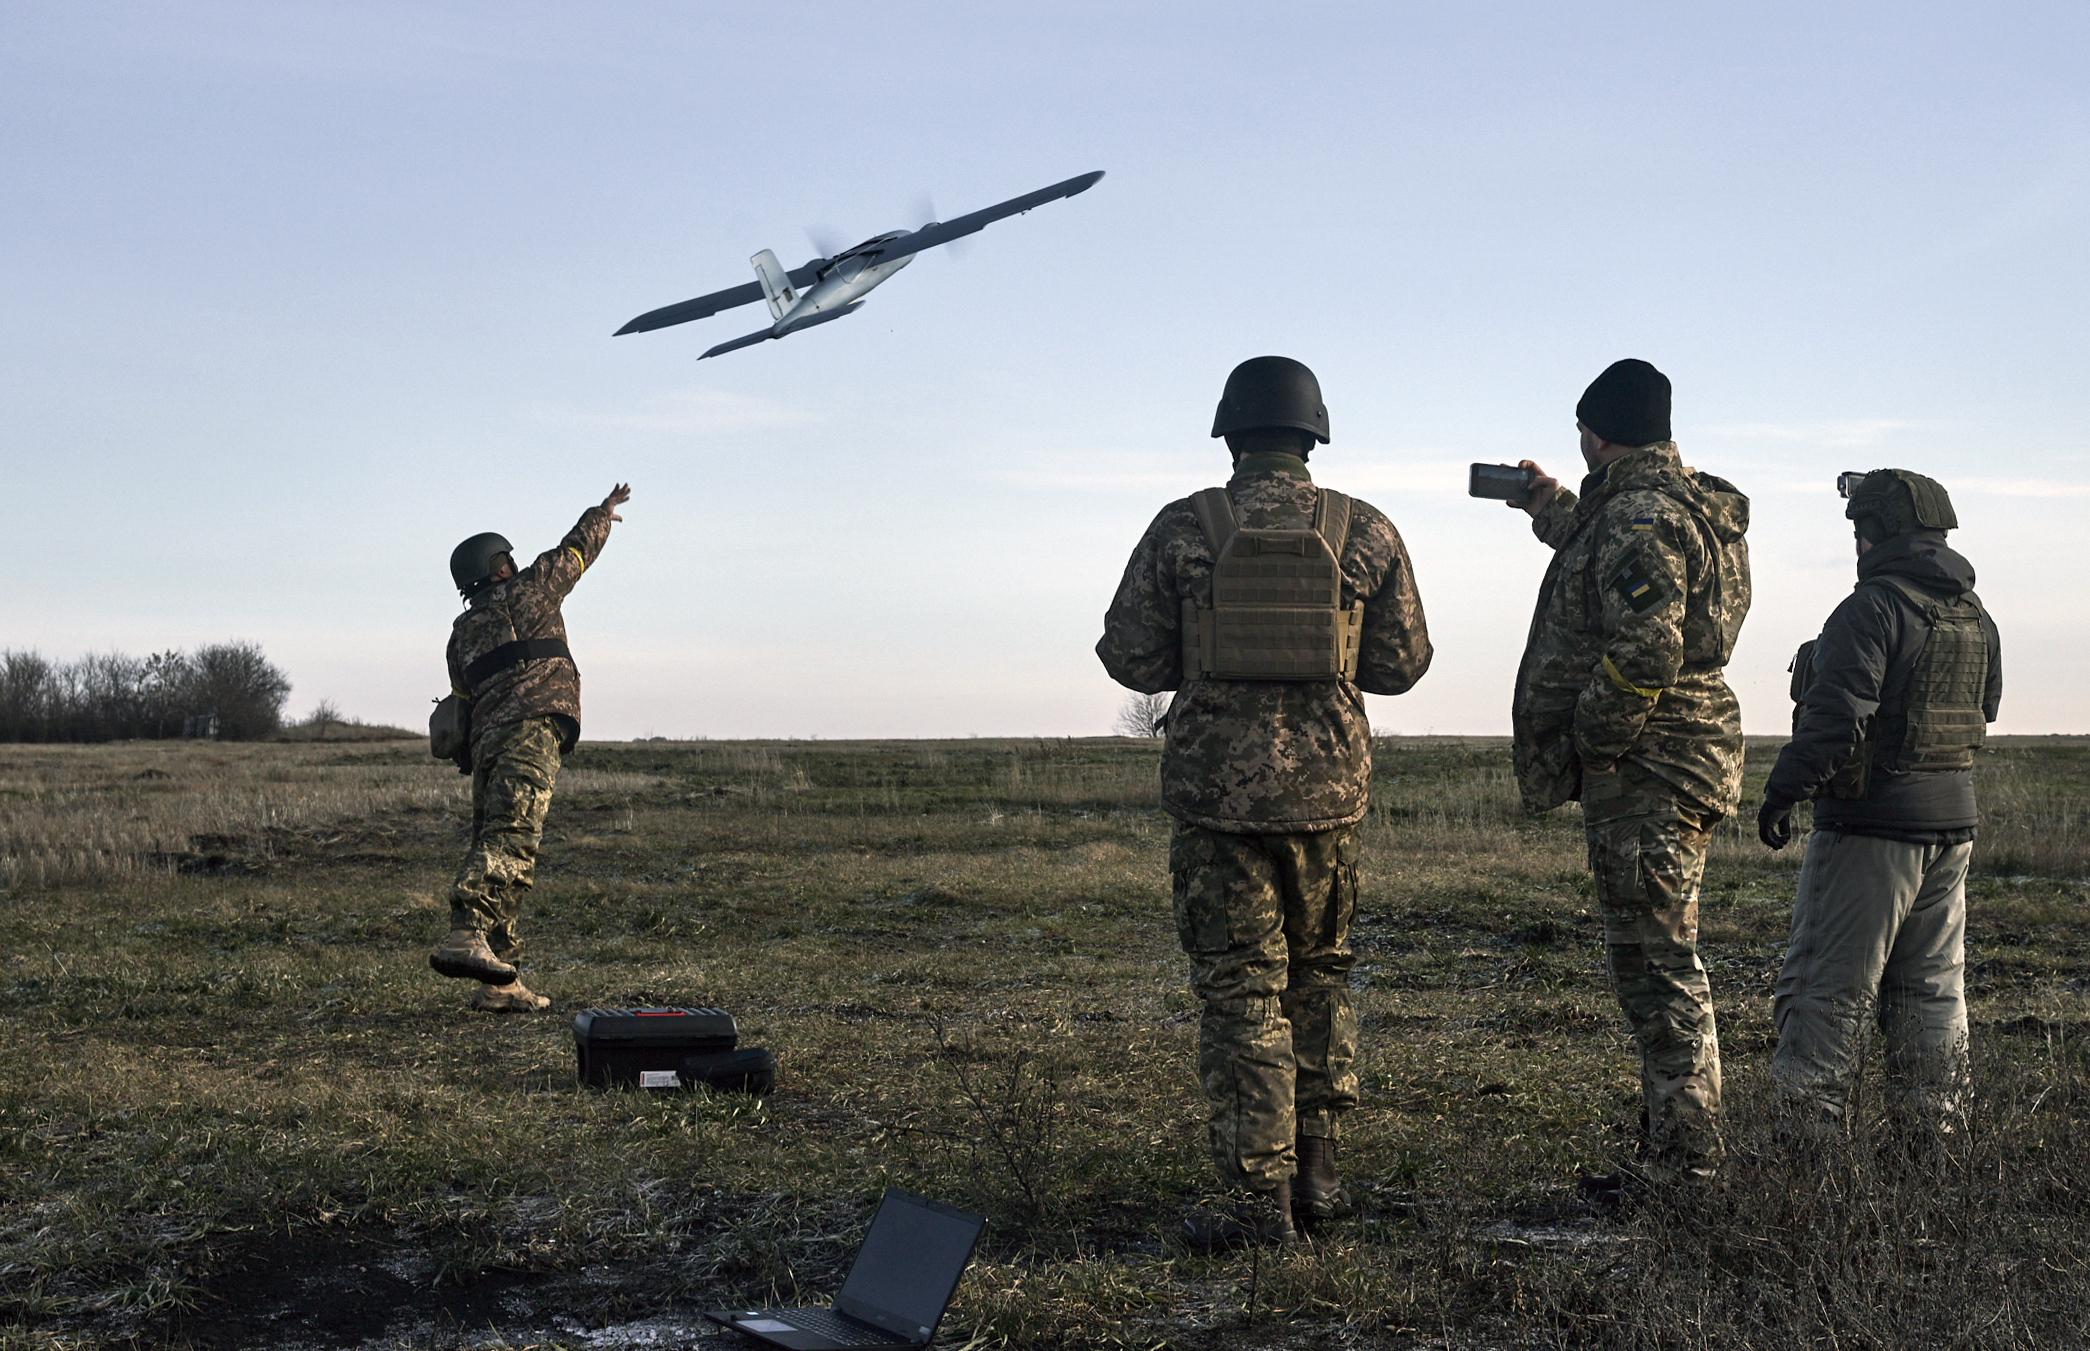 Ουκρανία: Προς παραγωγή 1 εκατομμυρίου drones FPV από το 2024